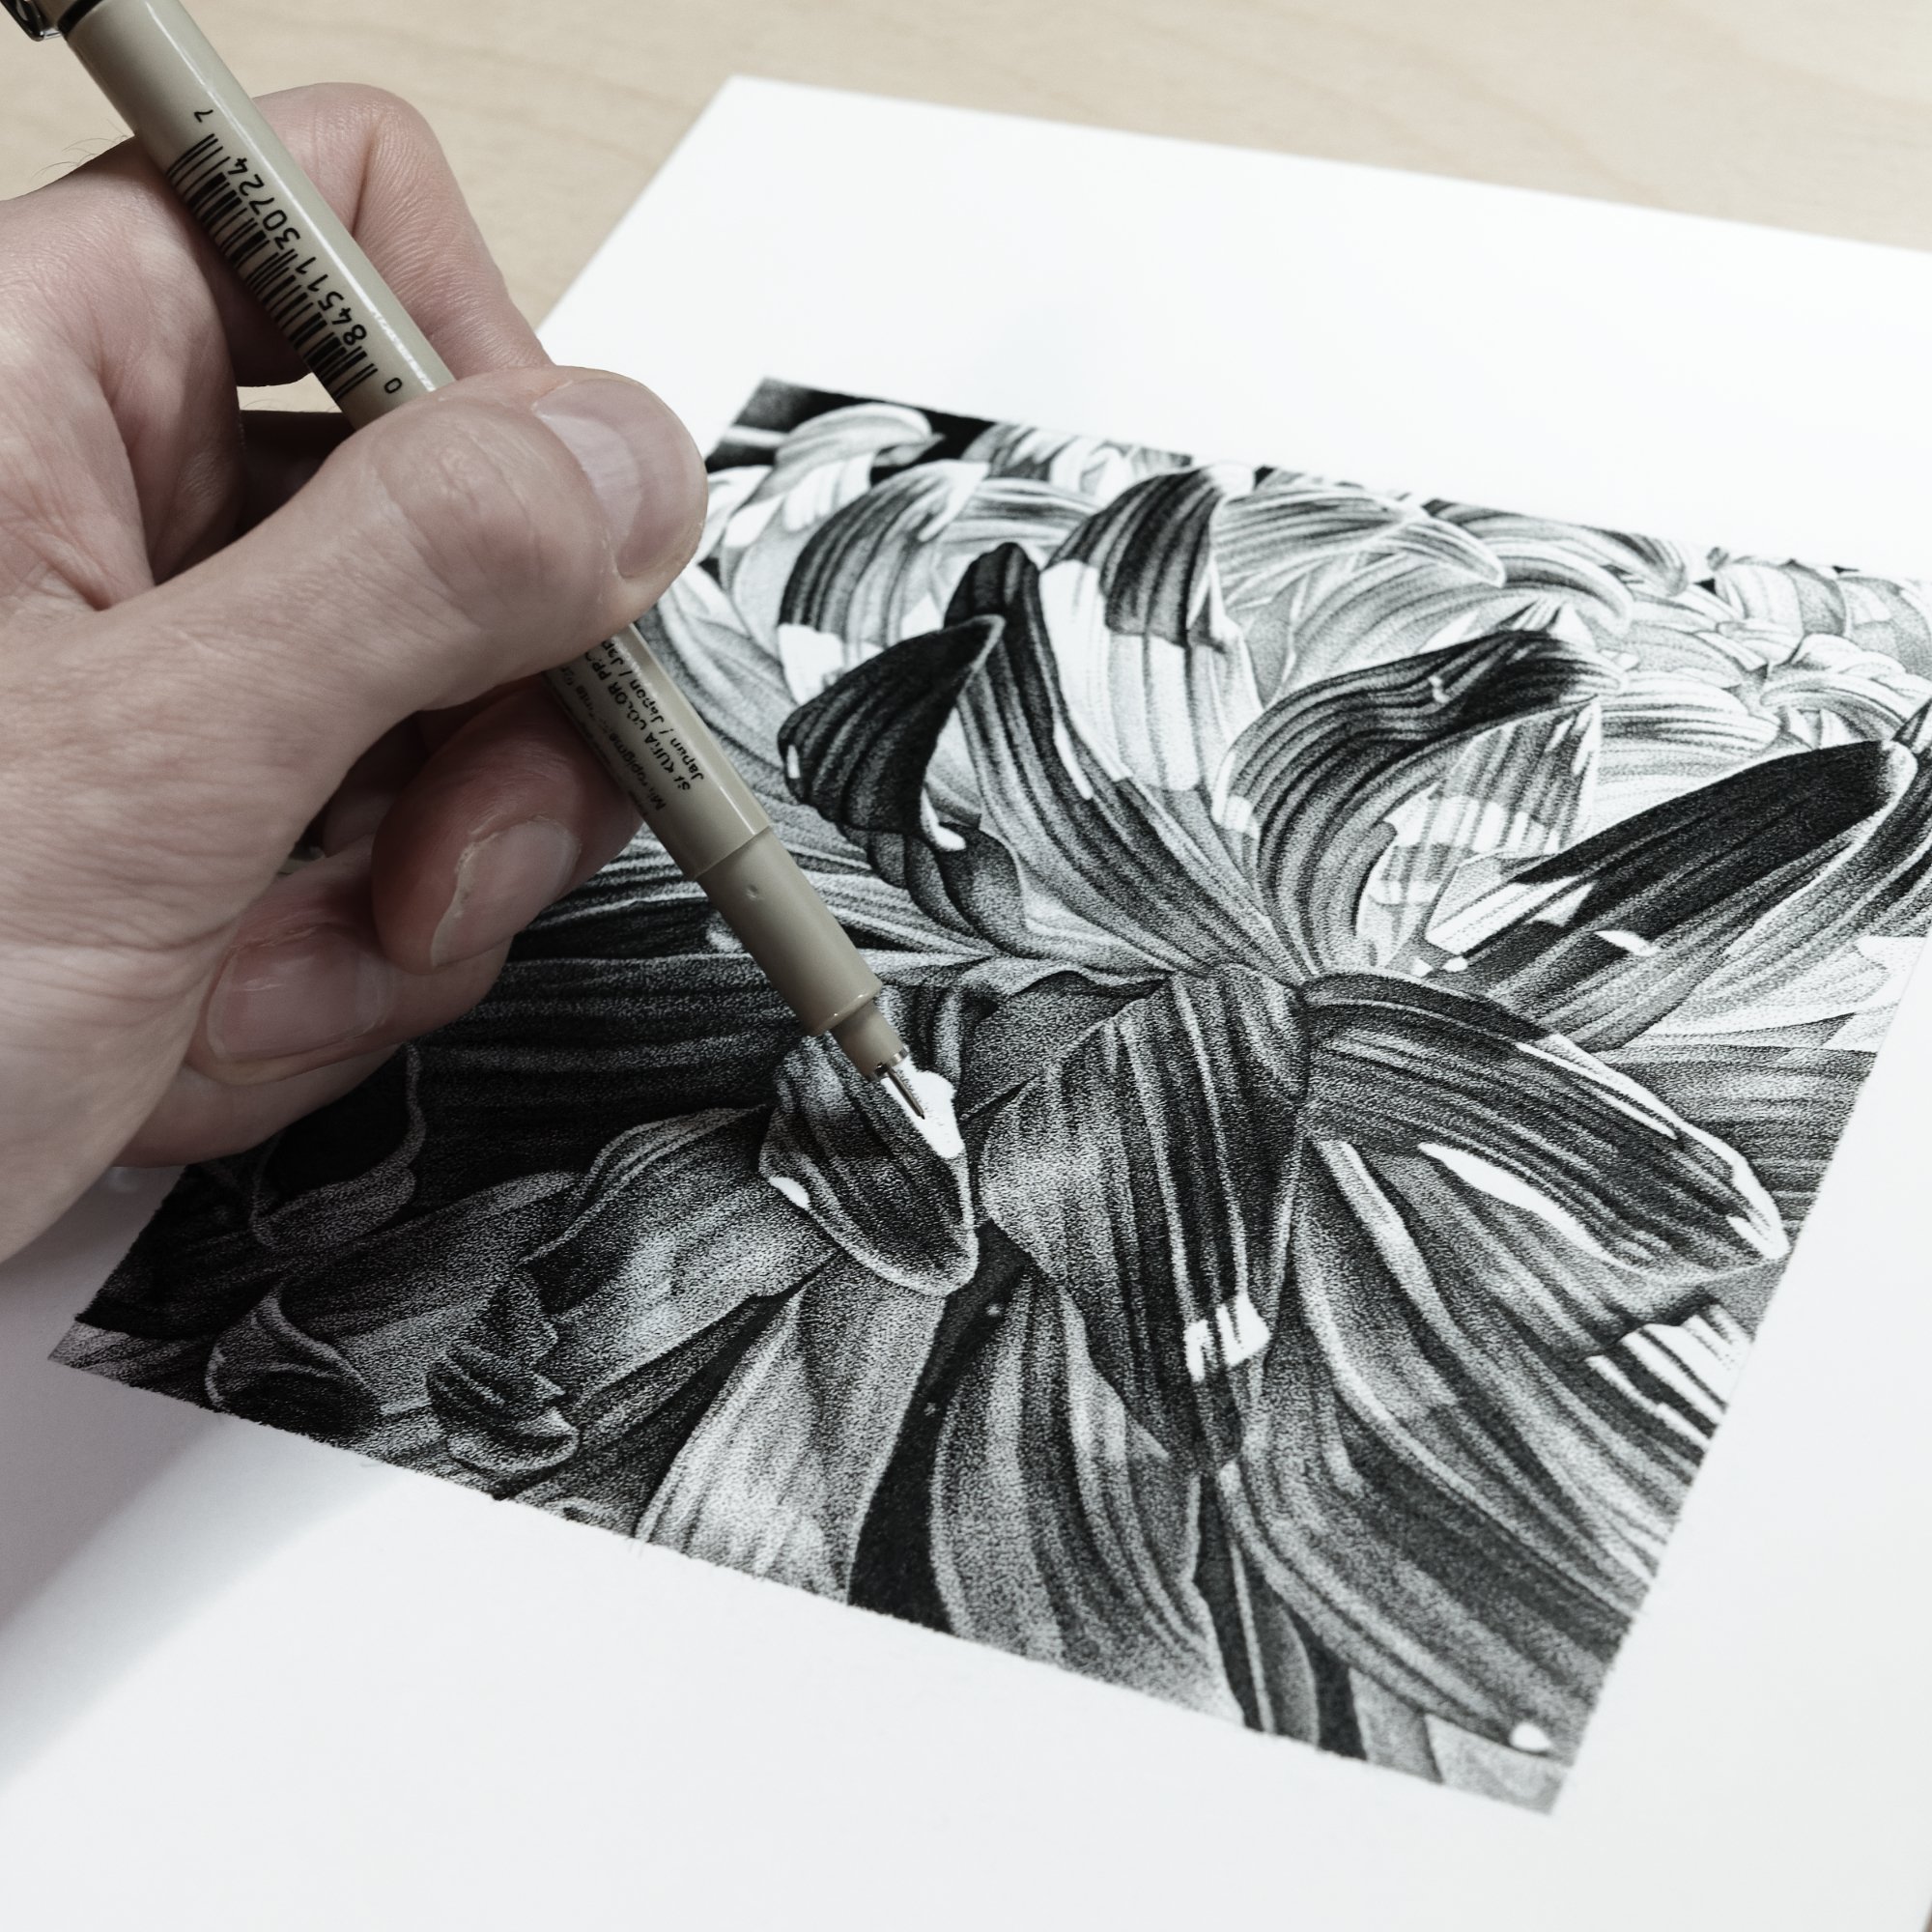 chrysanthemum drawing louis savage 1.jpg